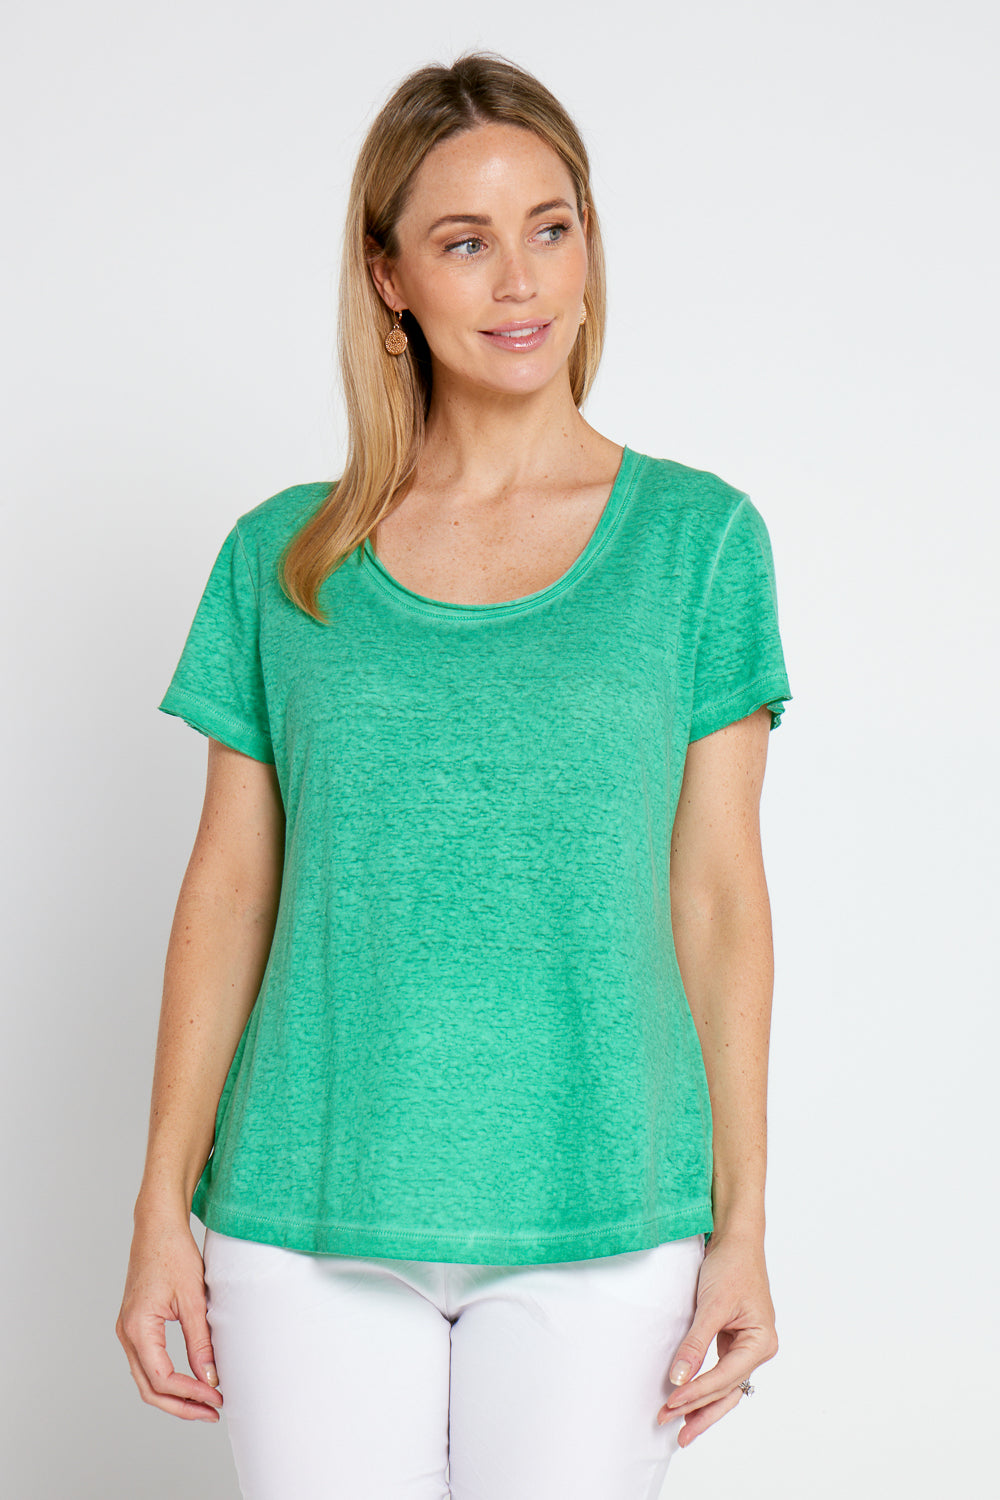 Elsie T-Shirt - Emerald